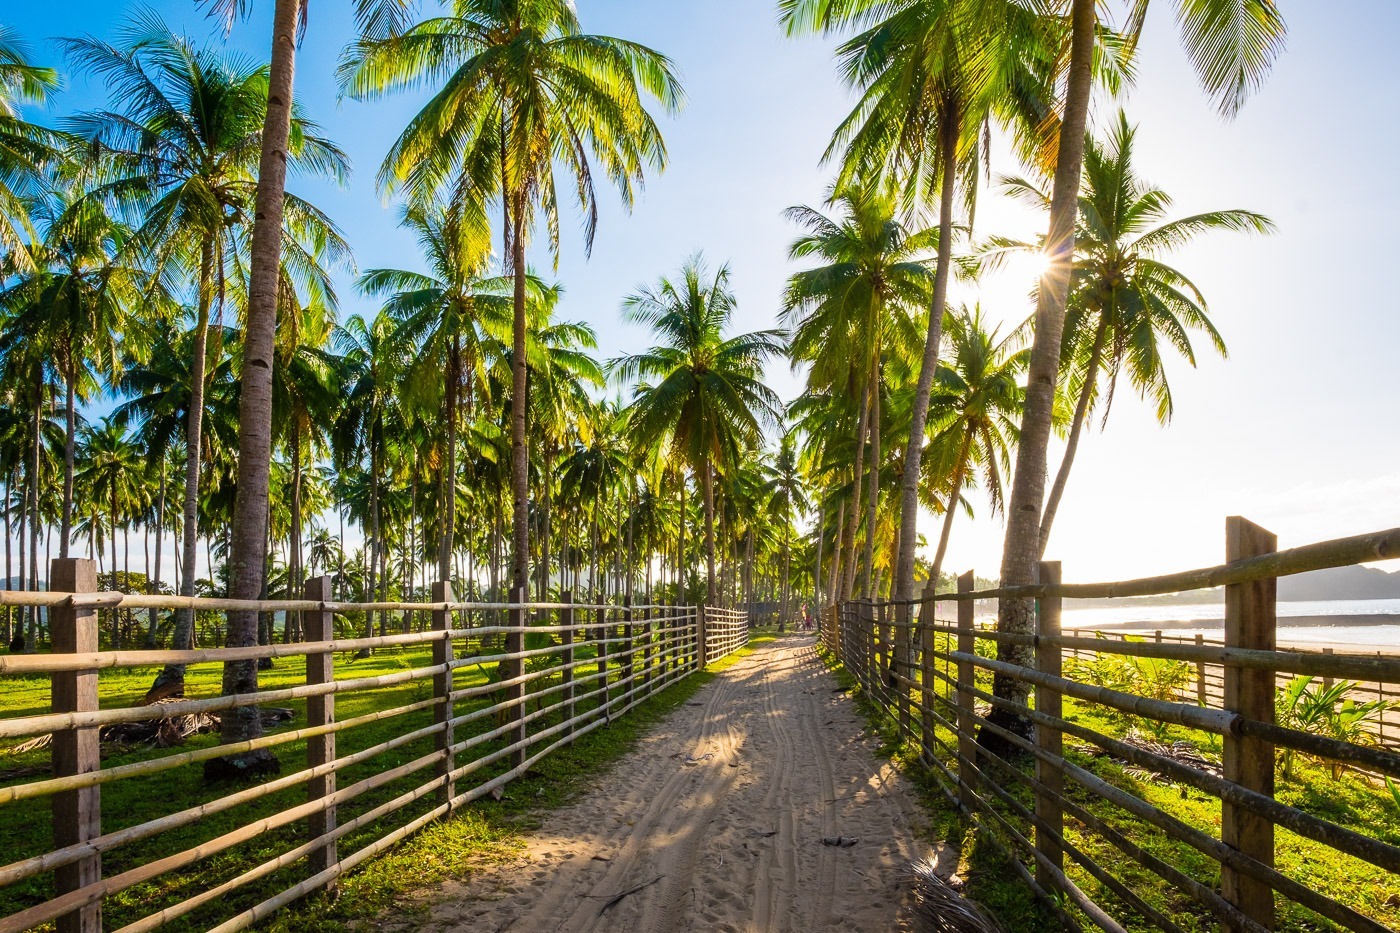 Dirt path through a palm tree plantation at Nacpan Beach, El Nido